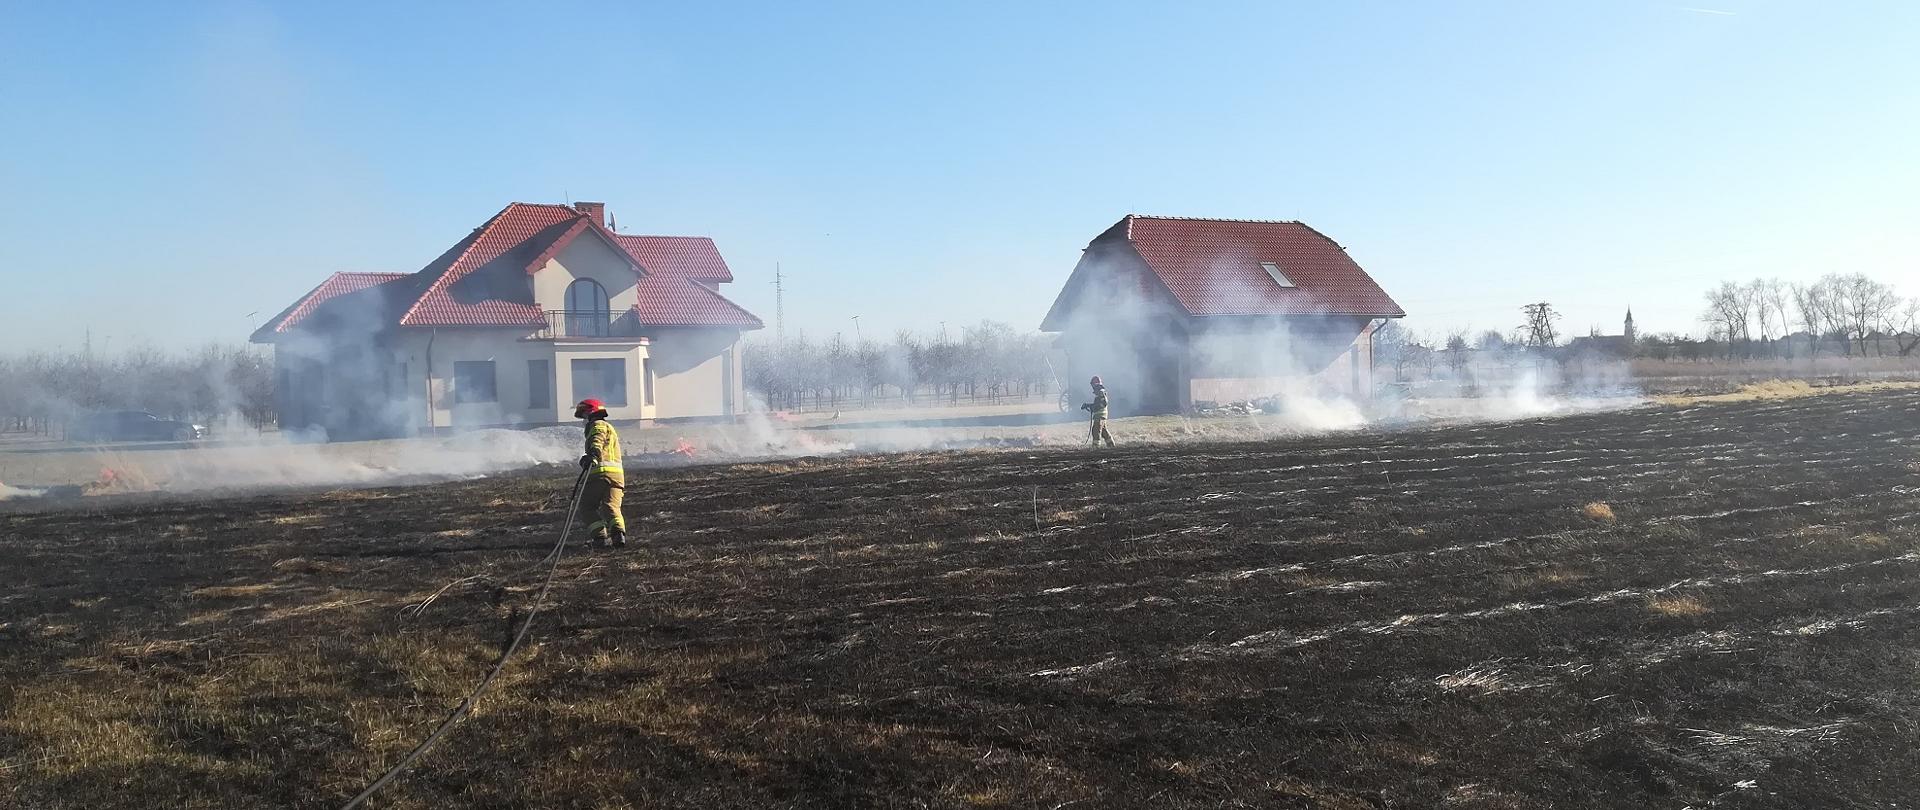 zdjęcie zrobione w dzień. Na zdjęciu widać palącą się trawę na nieużytkach. Dwaj strażacy rozciągają węże strażackie. Na zdjęciu widać ogień i dym, w tle dwa budynki.